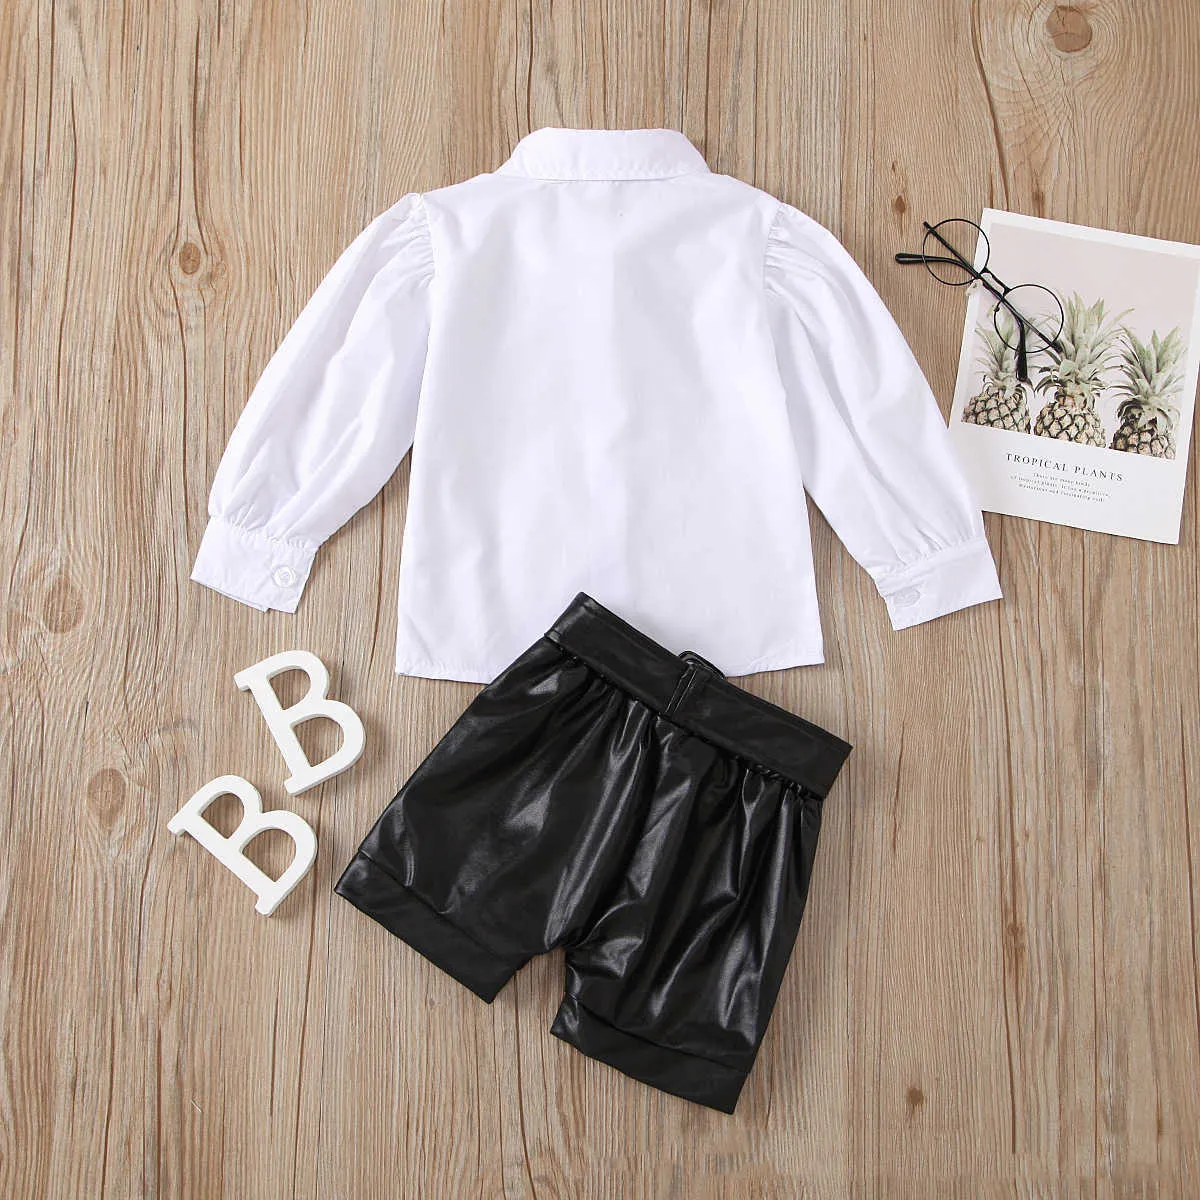 الفتيات ملابس مجموعة الربيع الصيف الاطفال الأزياء نفخة الأكمام قميص أبيض + السراويل الجلدية مجانا bowknot والحزام 210611